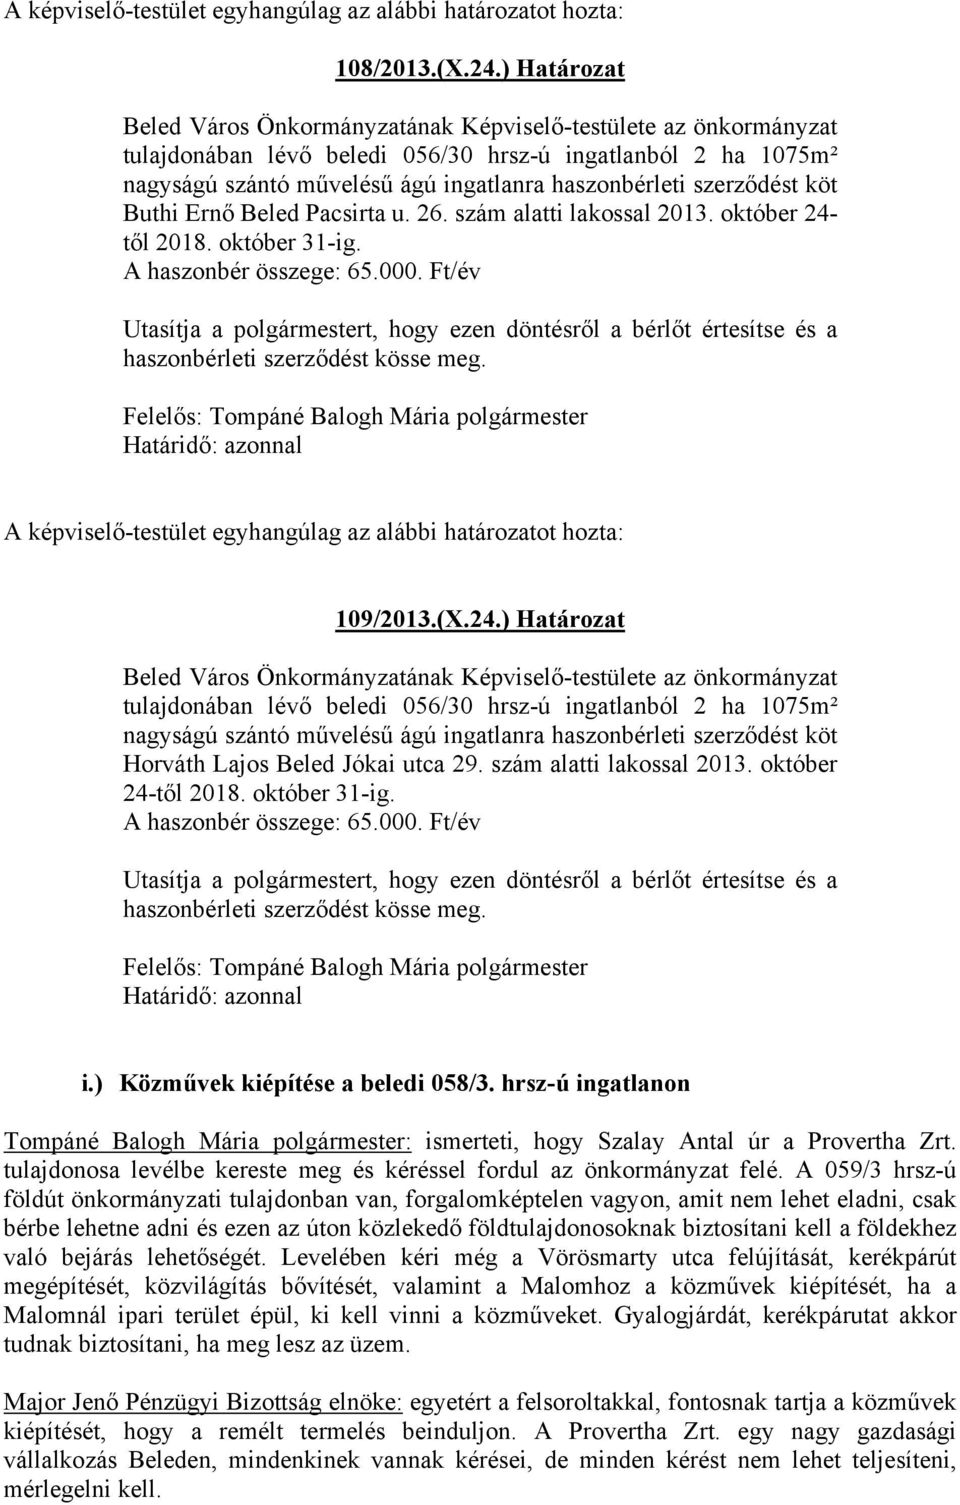 szerződést köt Buthi Ernő Beled Pacsirta u. 26. szám alatti lakossal 2013. október 24- től 2018. október 31-ig. A haszonbér összege: 65.000.